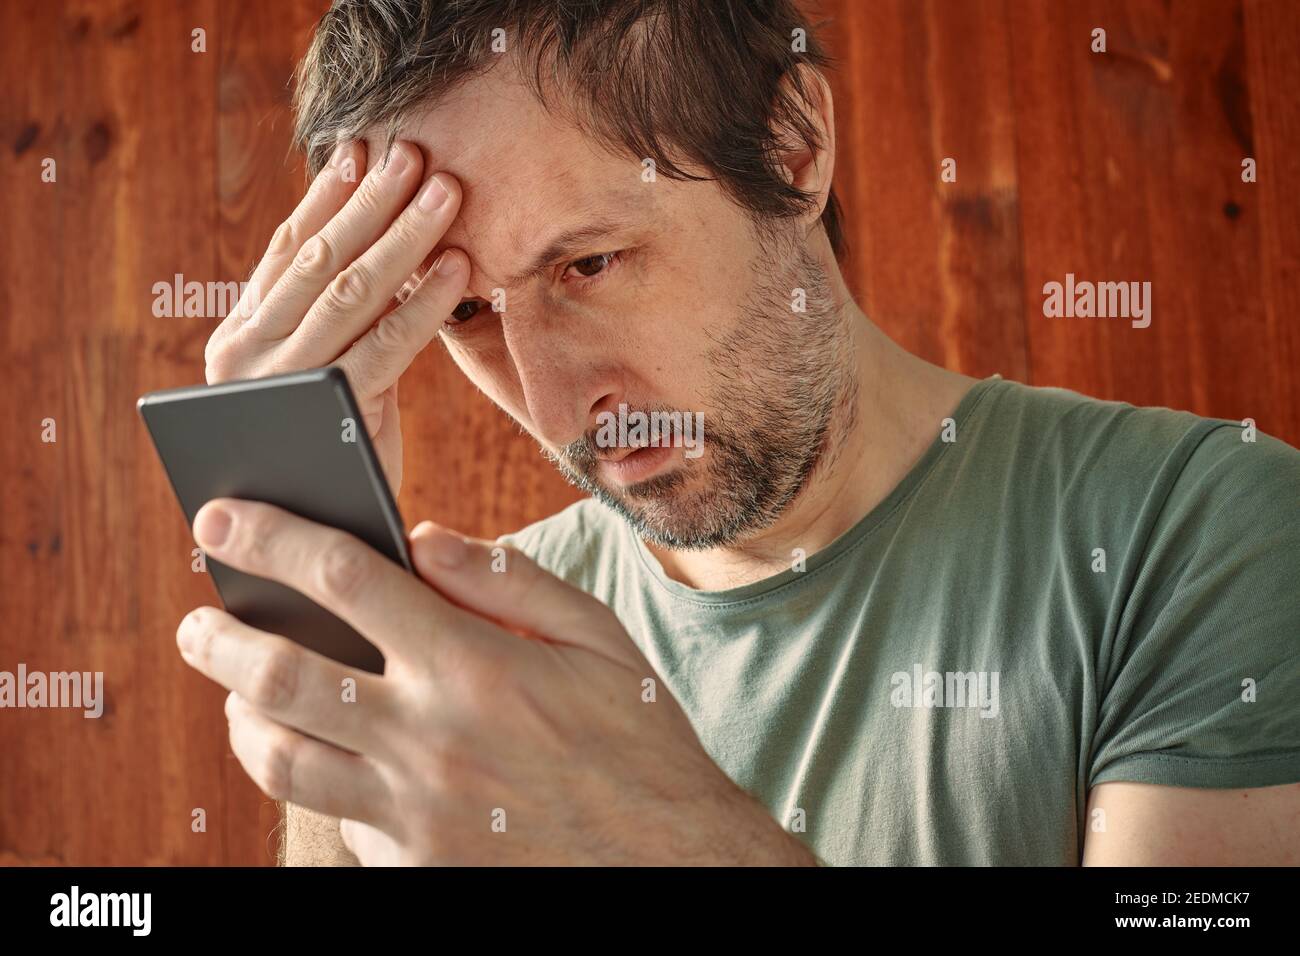 Unangenehmer Mann, der unangenehme sms-Benachrichtigung auf dem Handy erhält und ungläubig SMS liest Stockfoto